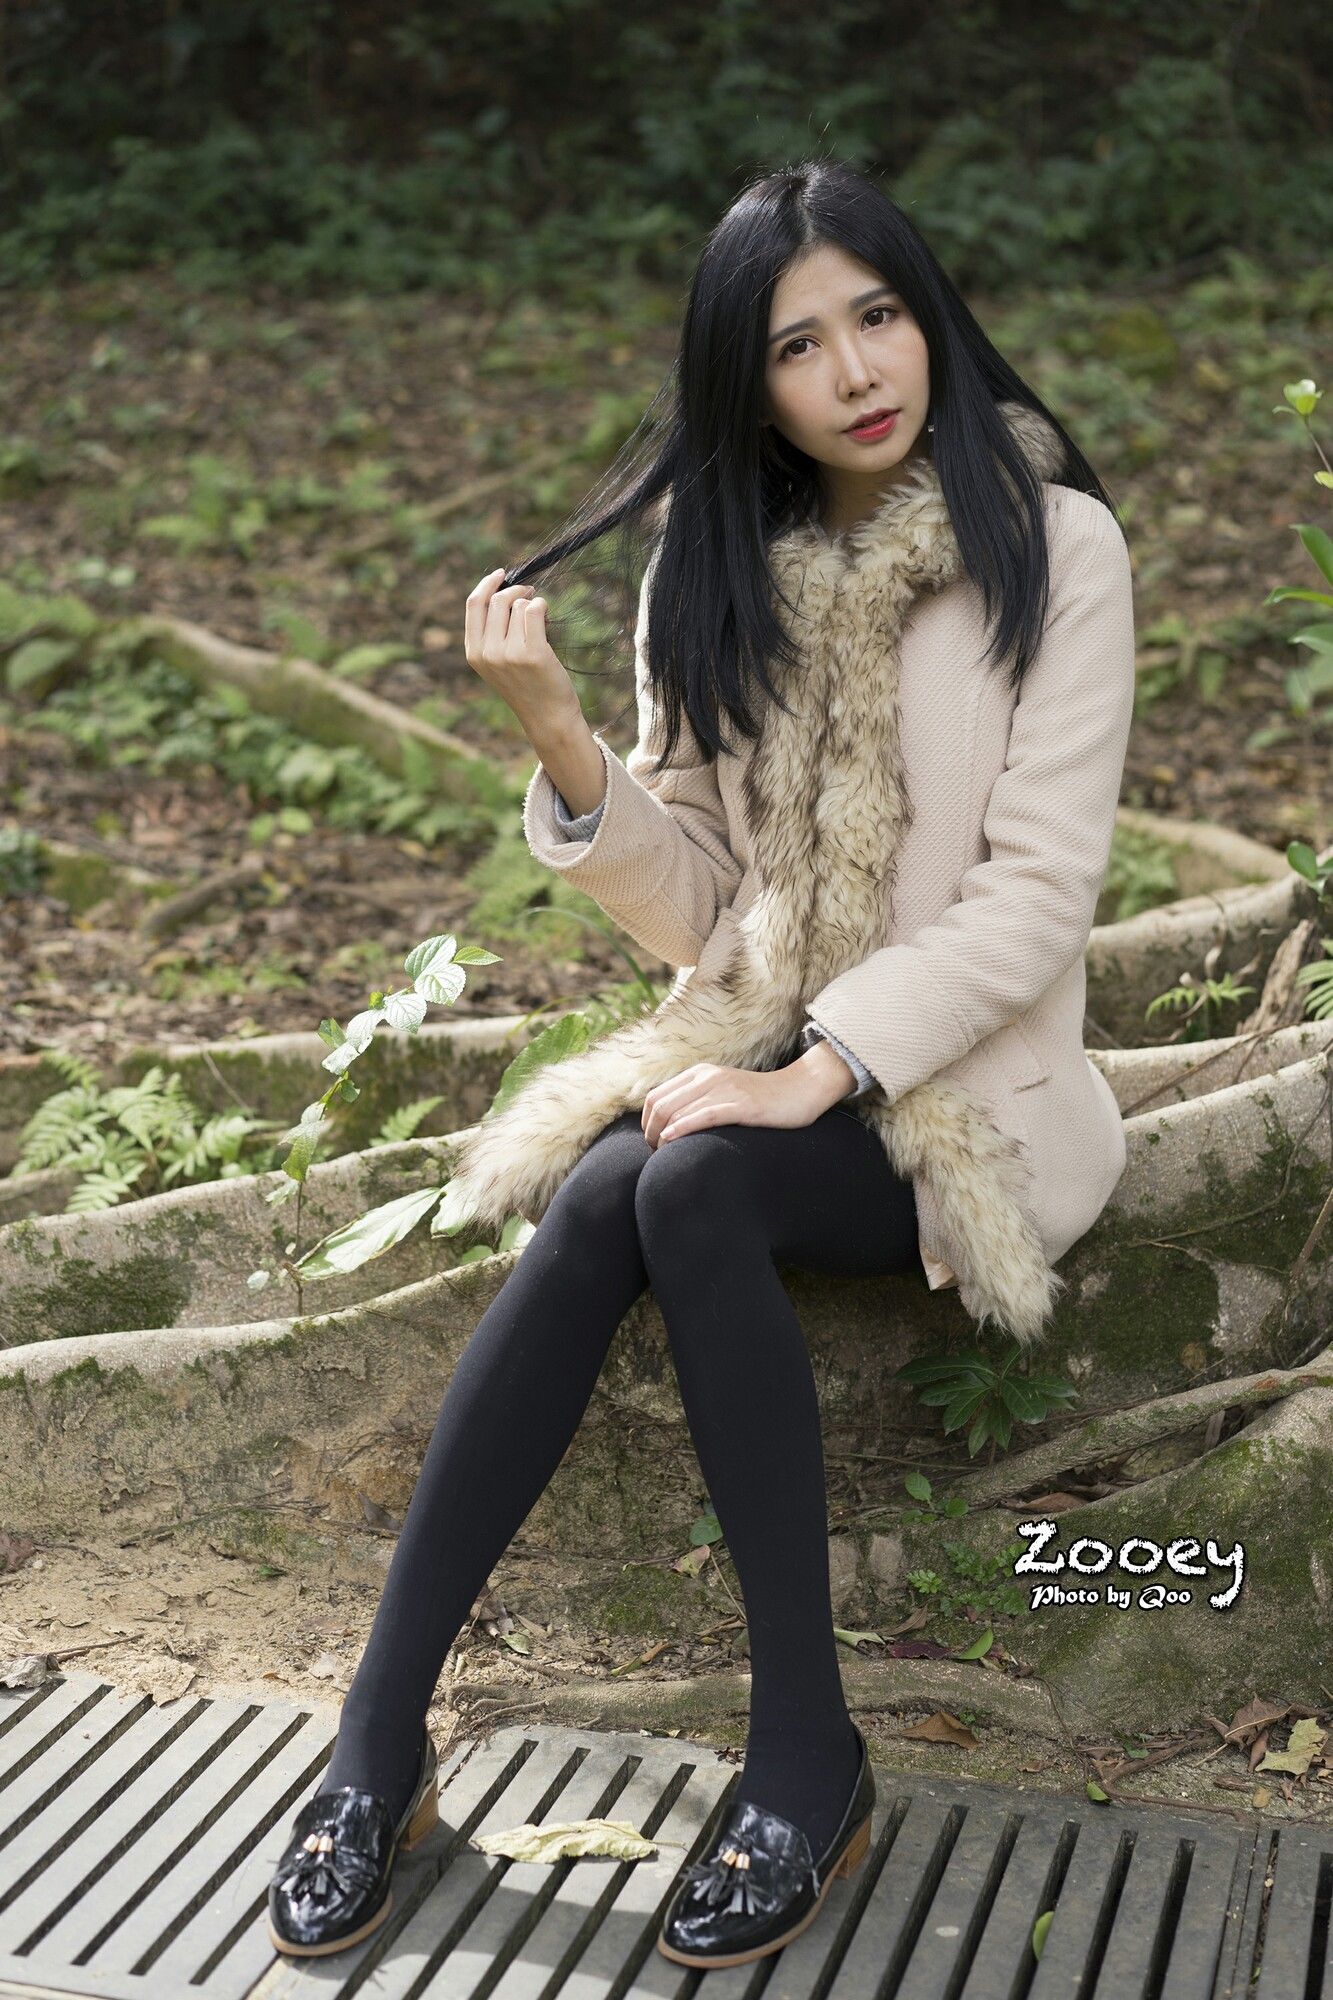 [台湾美女] Zooey 外拍小清新3套服装 写真图片[62](第6页)